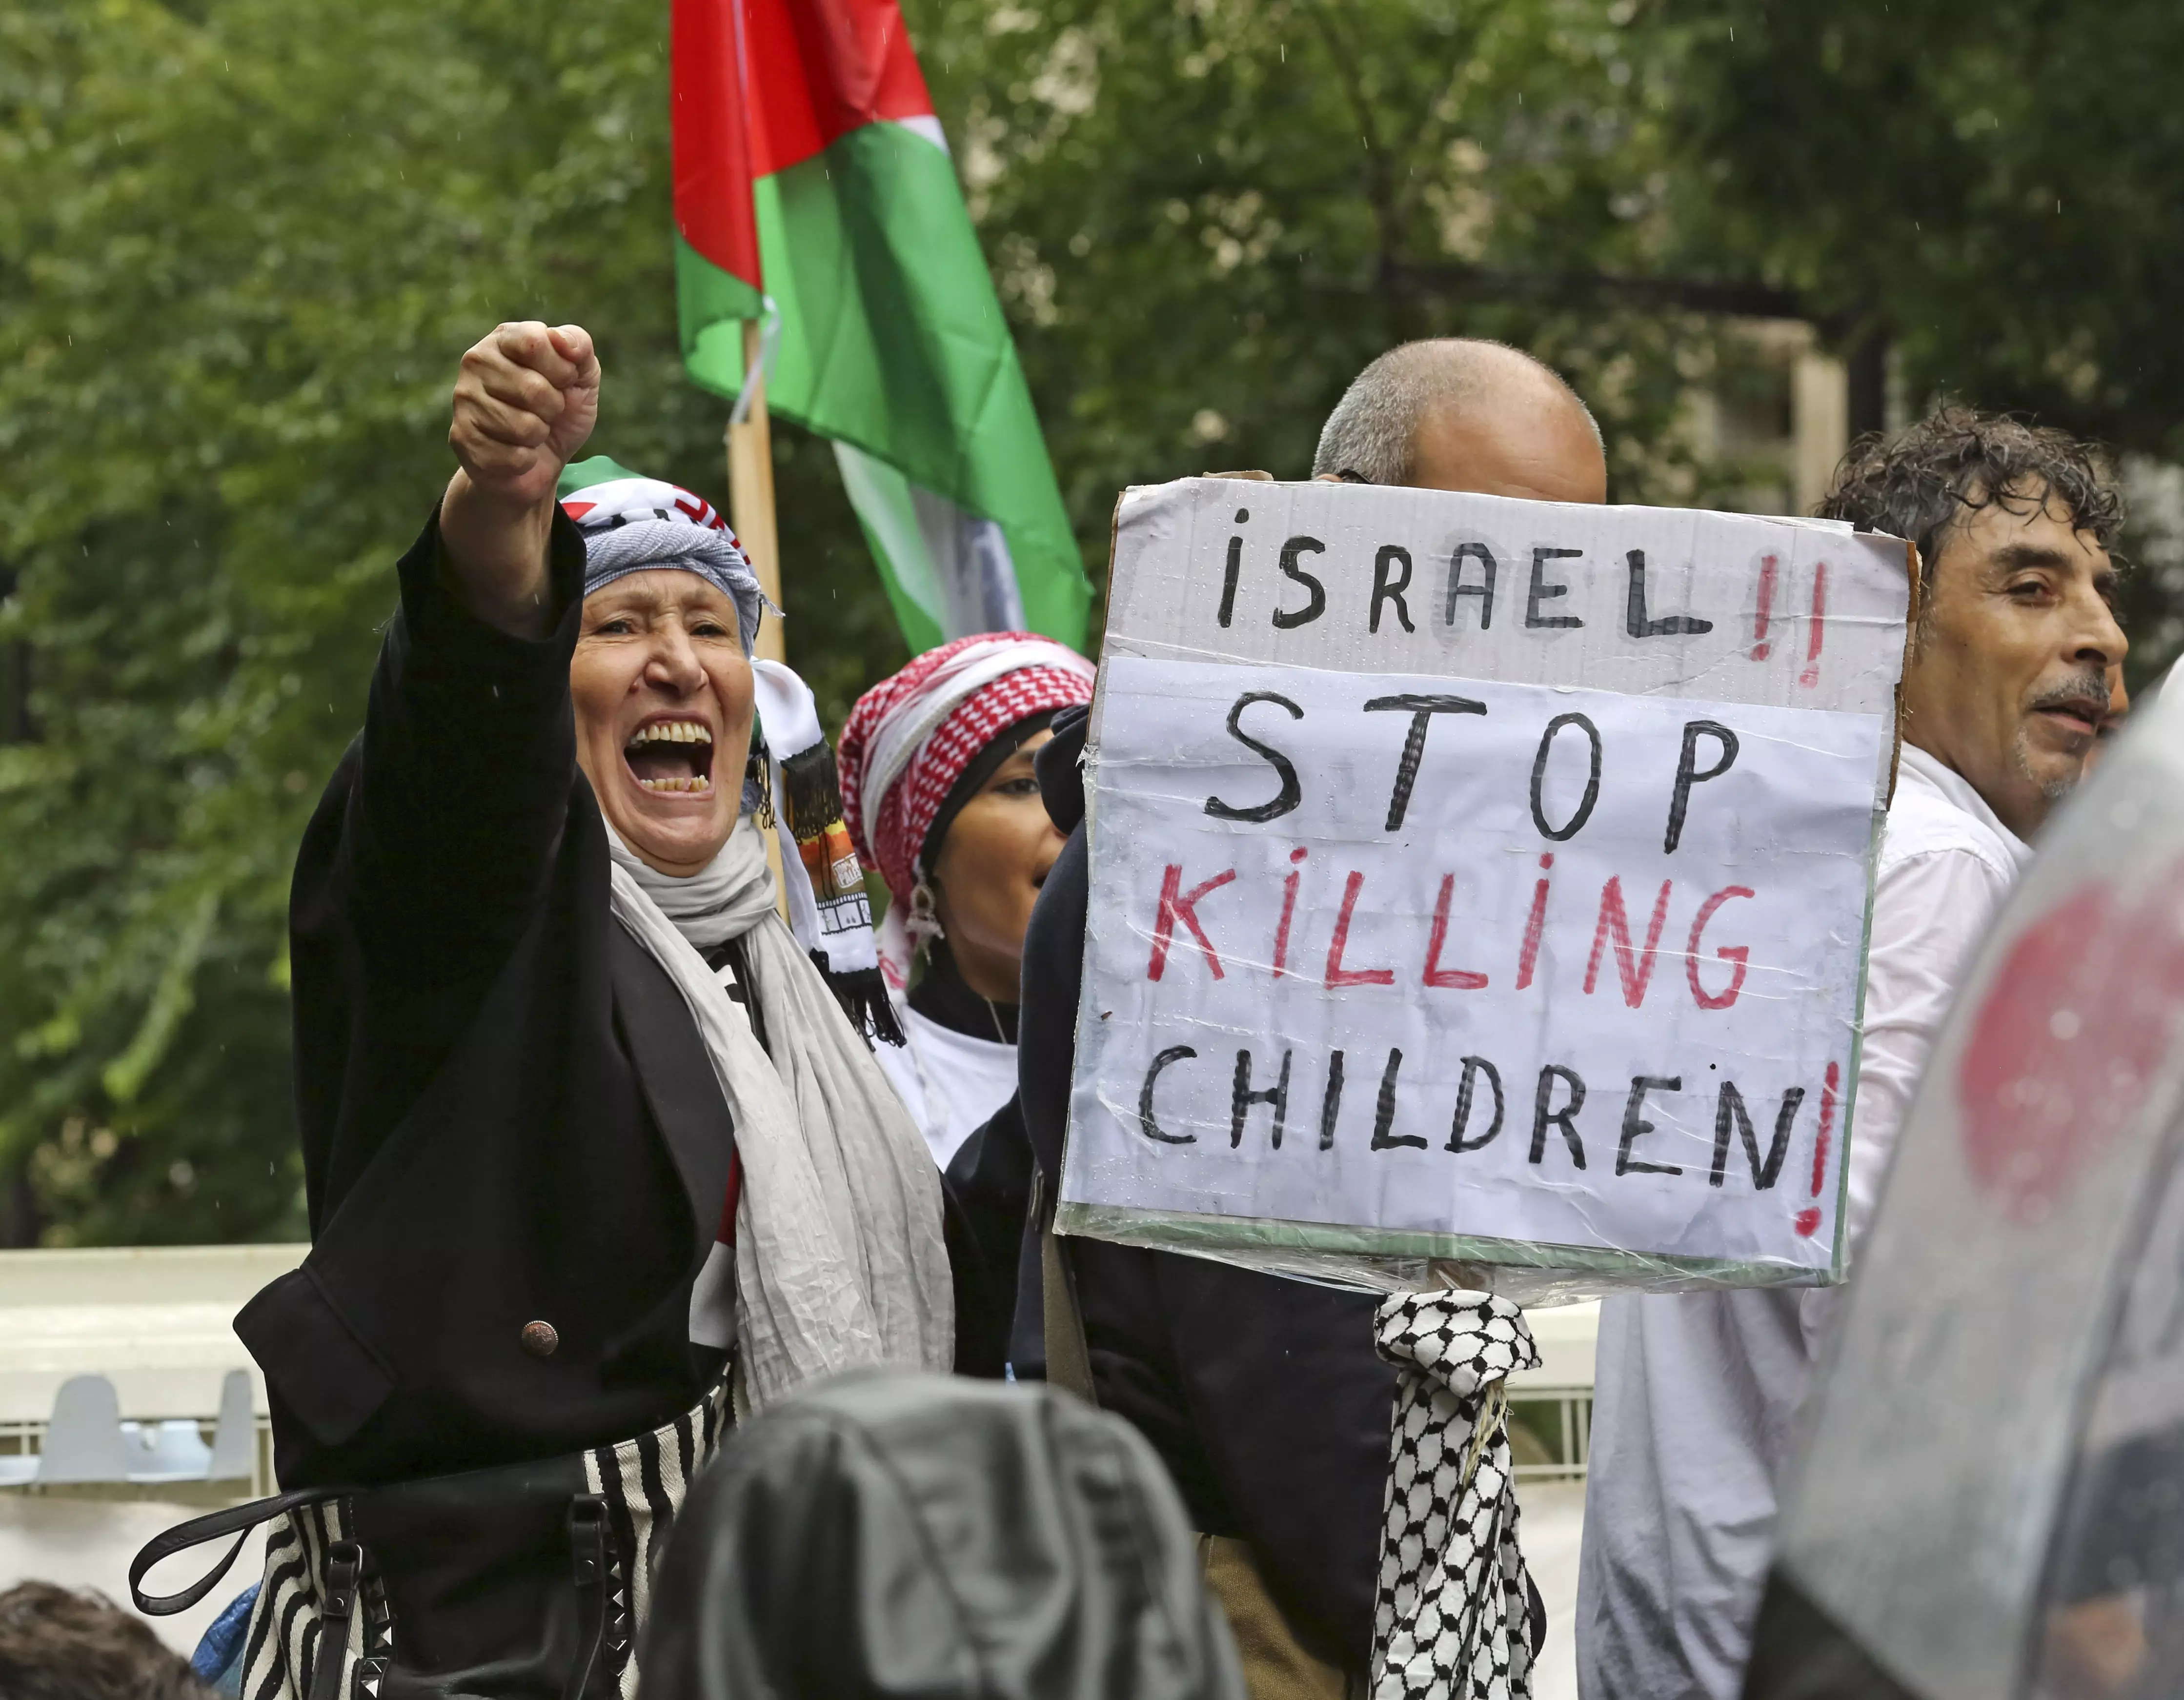 "ישראל, הפסיקי להרוג את ילדינו"